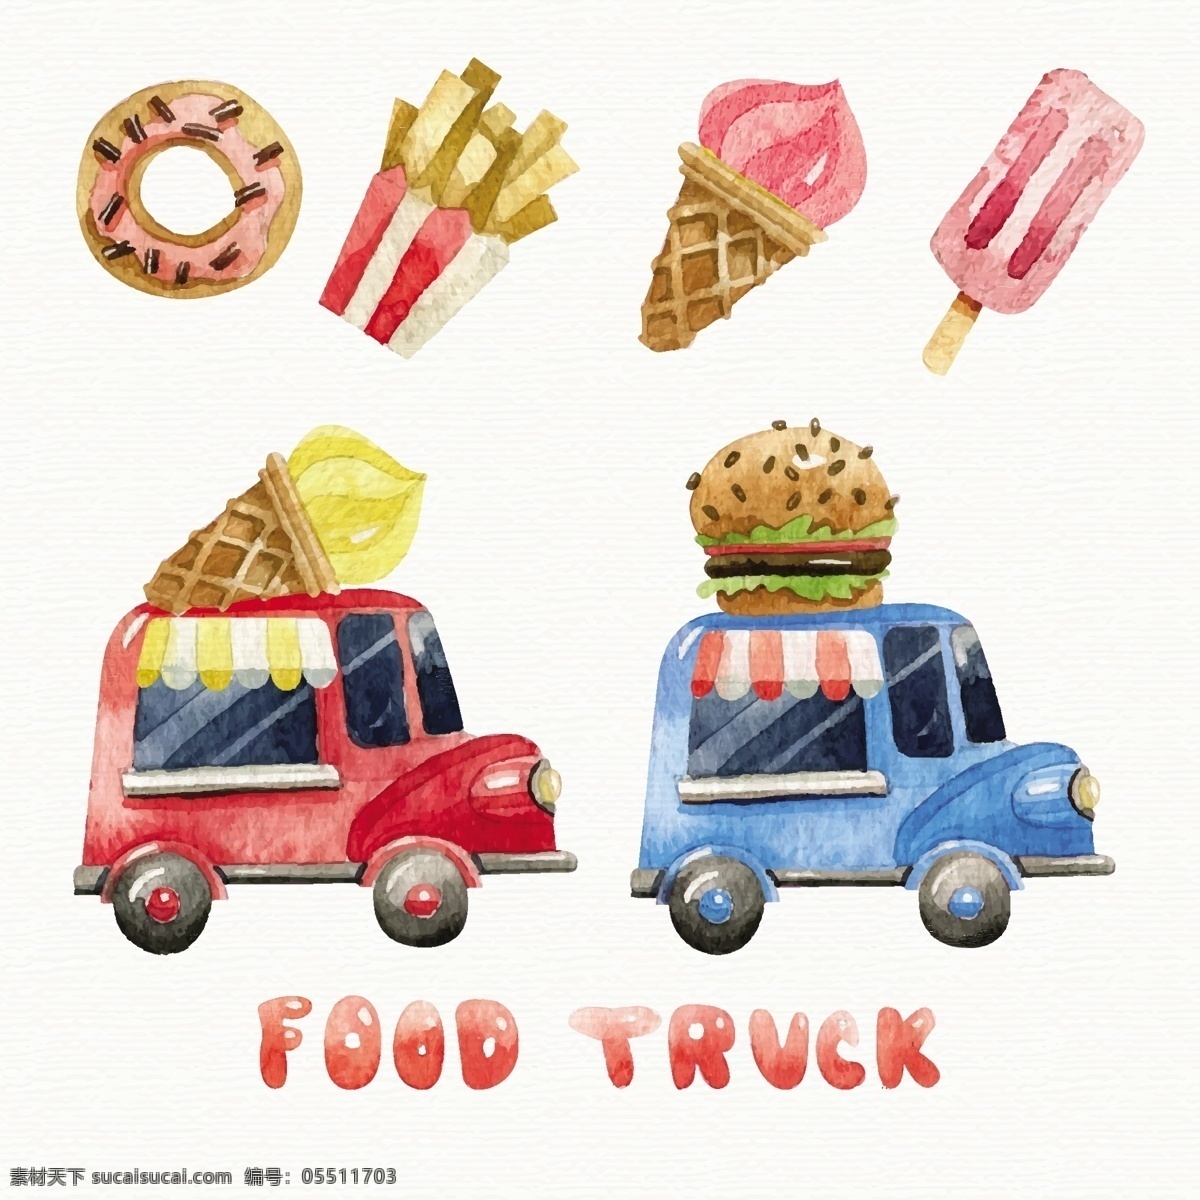 水彩画 食品 卡车 食物 薯条 冰淇淋 食品卡车 甜甜圈 夏天 甜筒